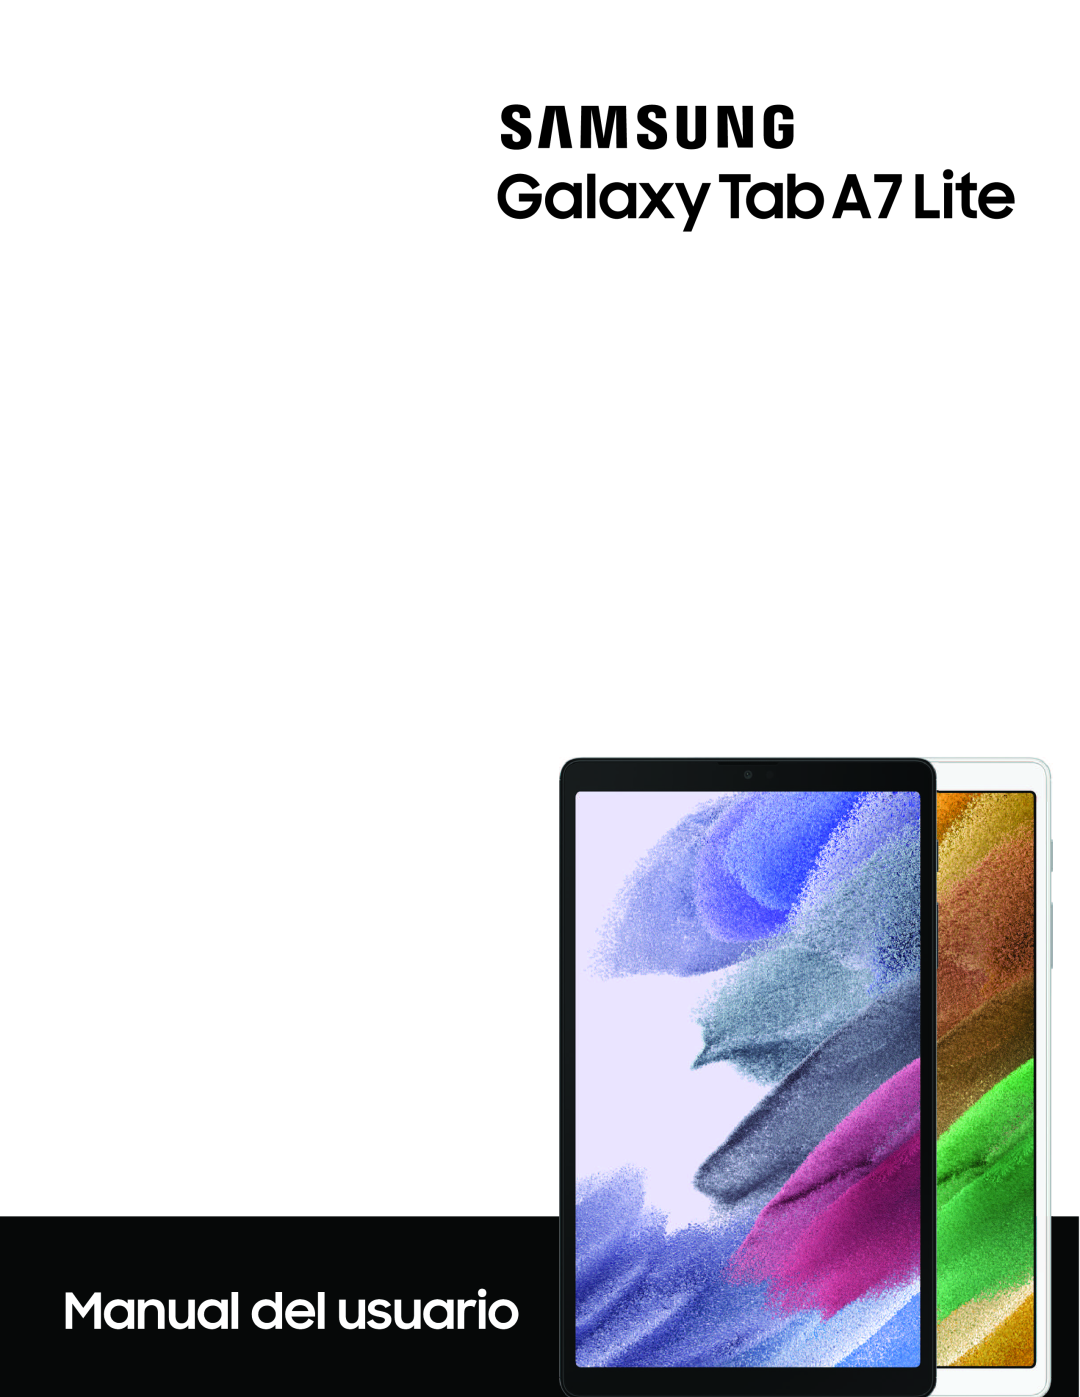 Galaxy Tab A7 Lite Verizon